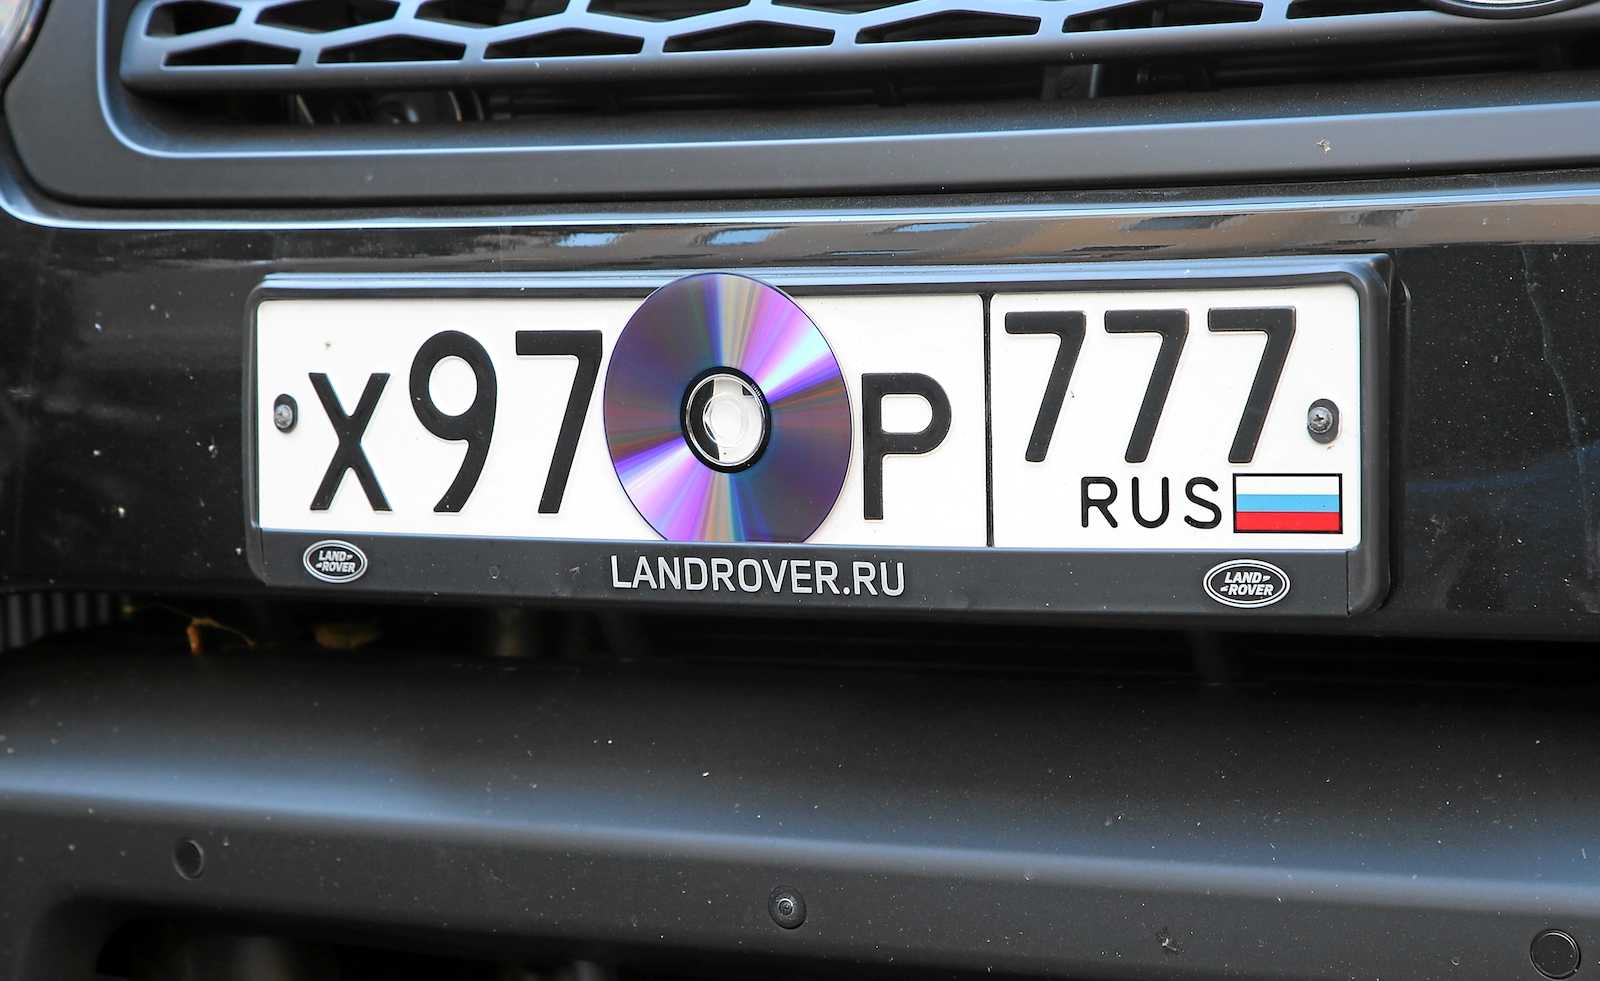 Автомобильные номера россии 2024. Номерной знак автомобиля. Нечитаемый гос номер. Грязный номерной знак автомобиля. Закрытие номерного знака.